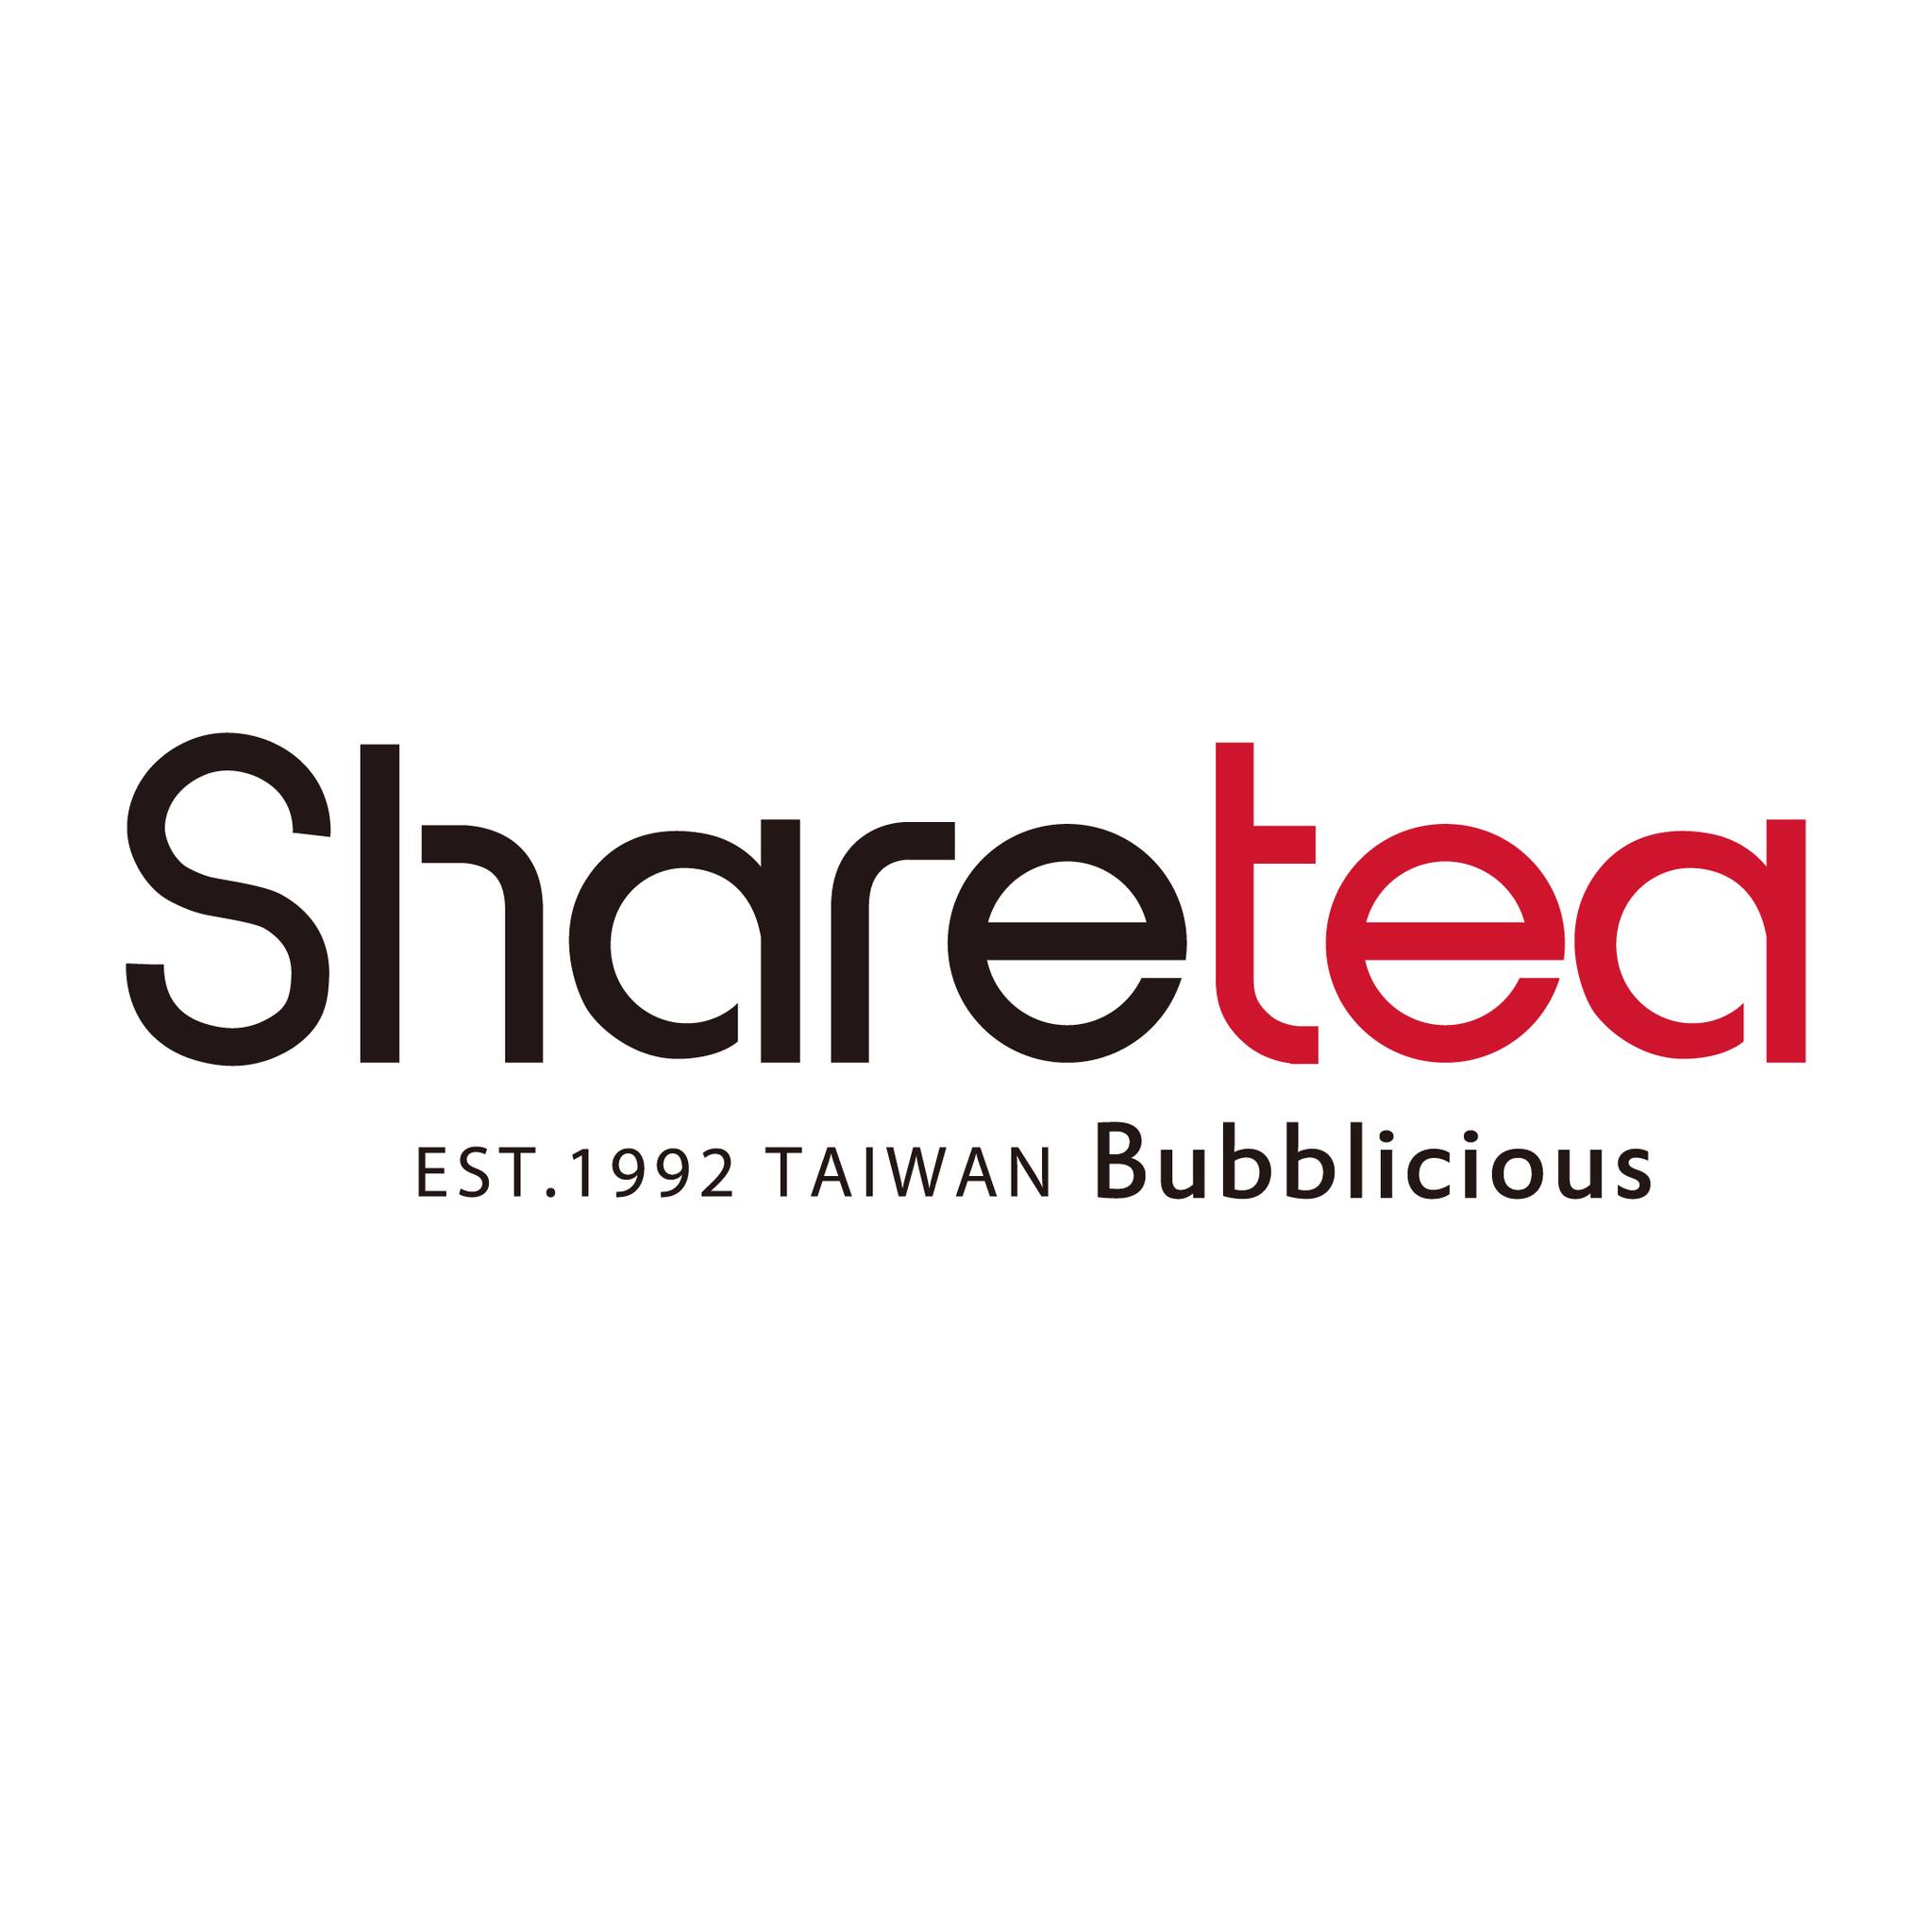 Sharetea - Logo